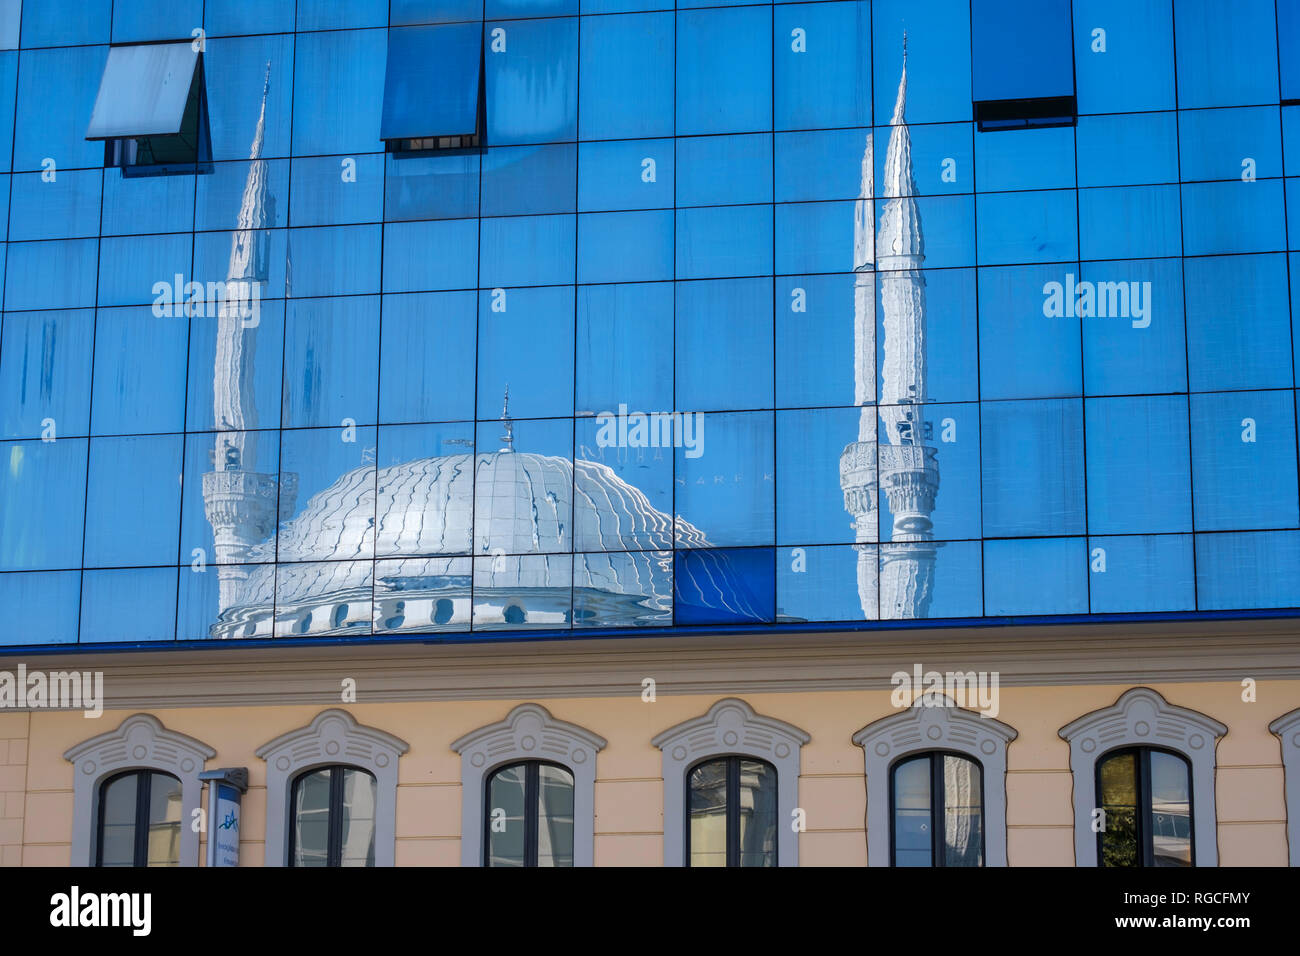 Albanien, Shkodra, Ebu Beker Moschee, spiegelt sich in der Glasfassade. Stockfoto